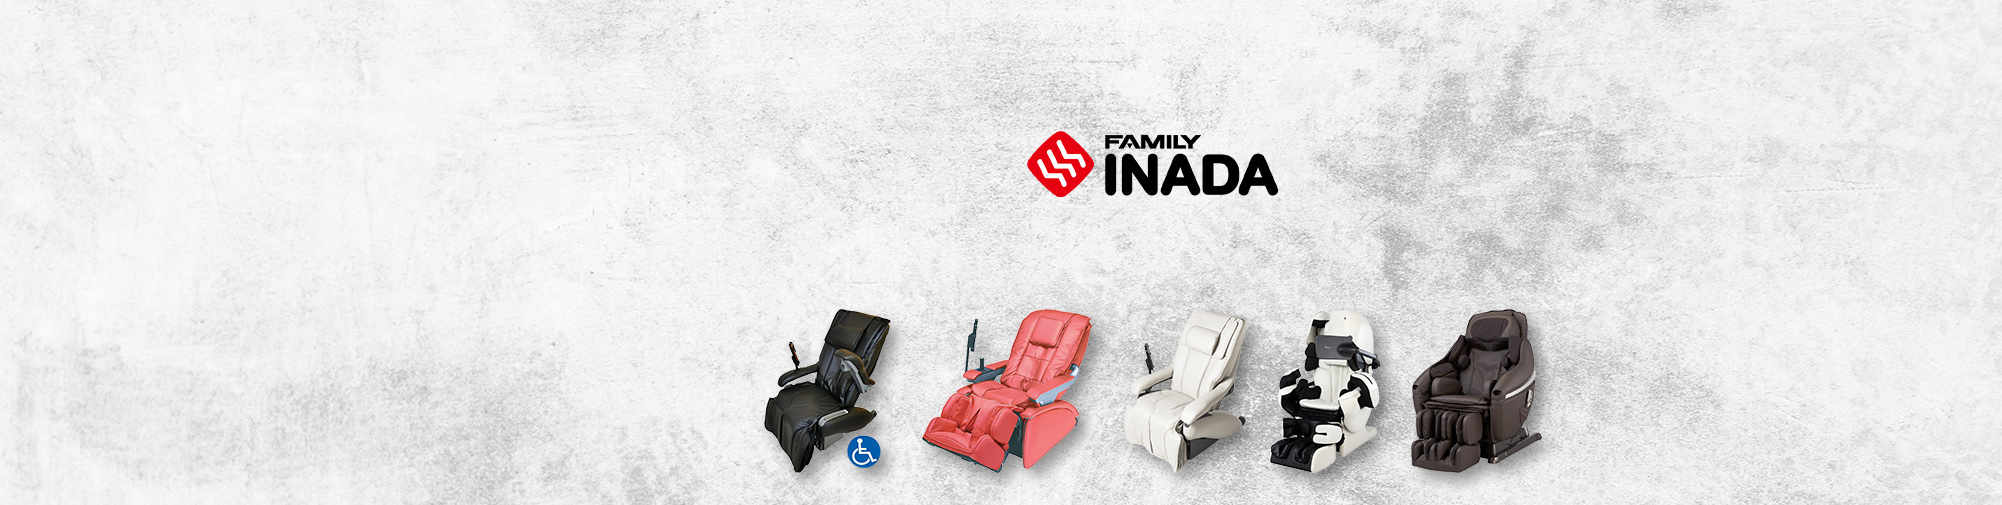 Family Inada - entreprise japonaise de tradition | Le monde des fauteuils de massage